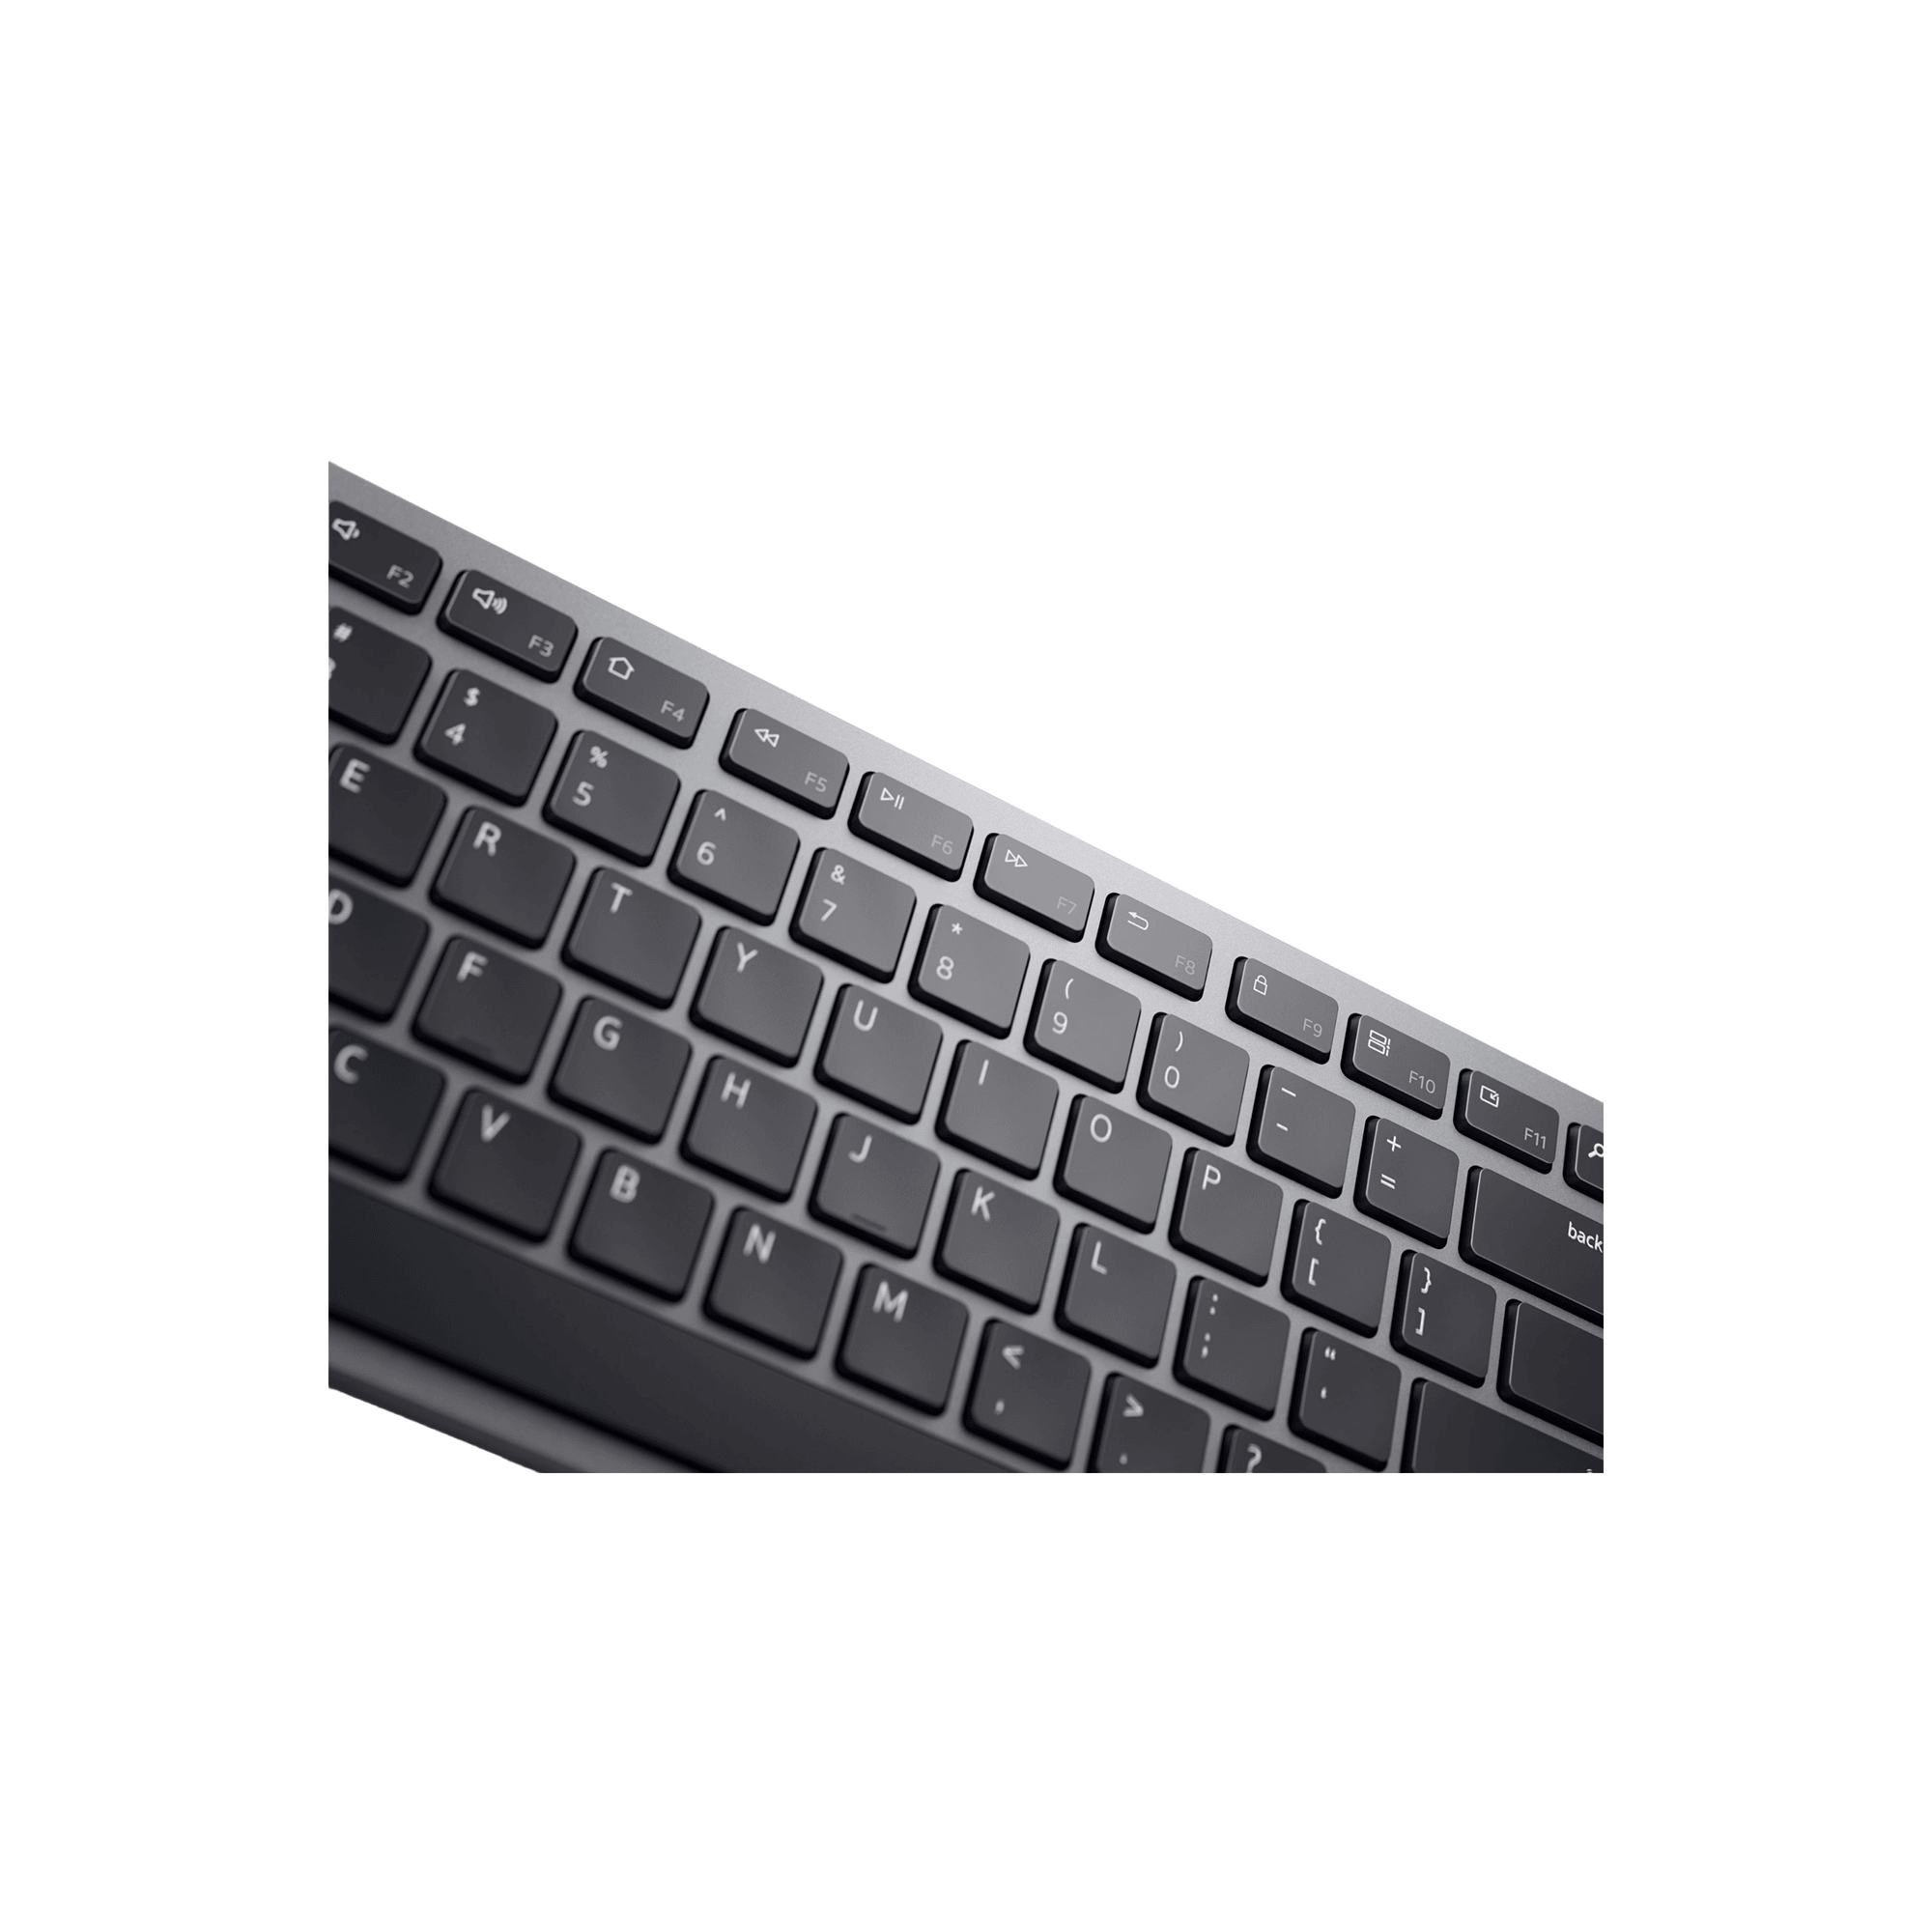 Dell KB700 Multi-Device Wireless Keyboard